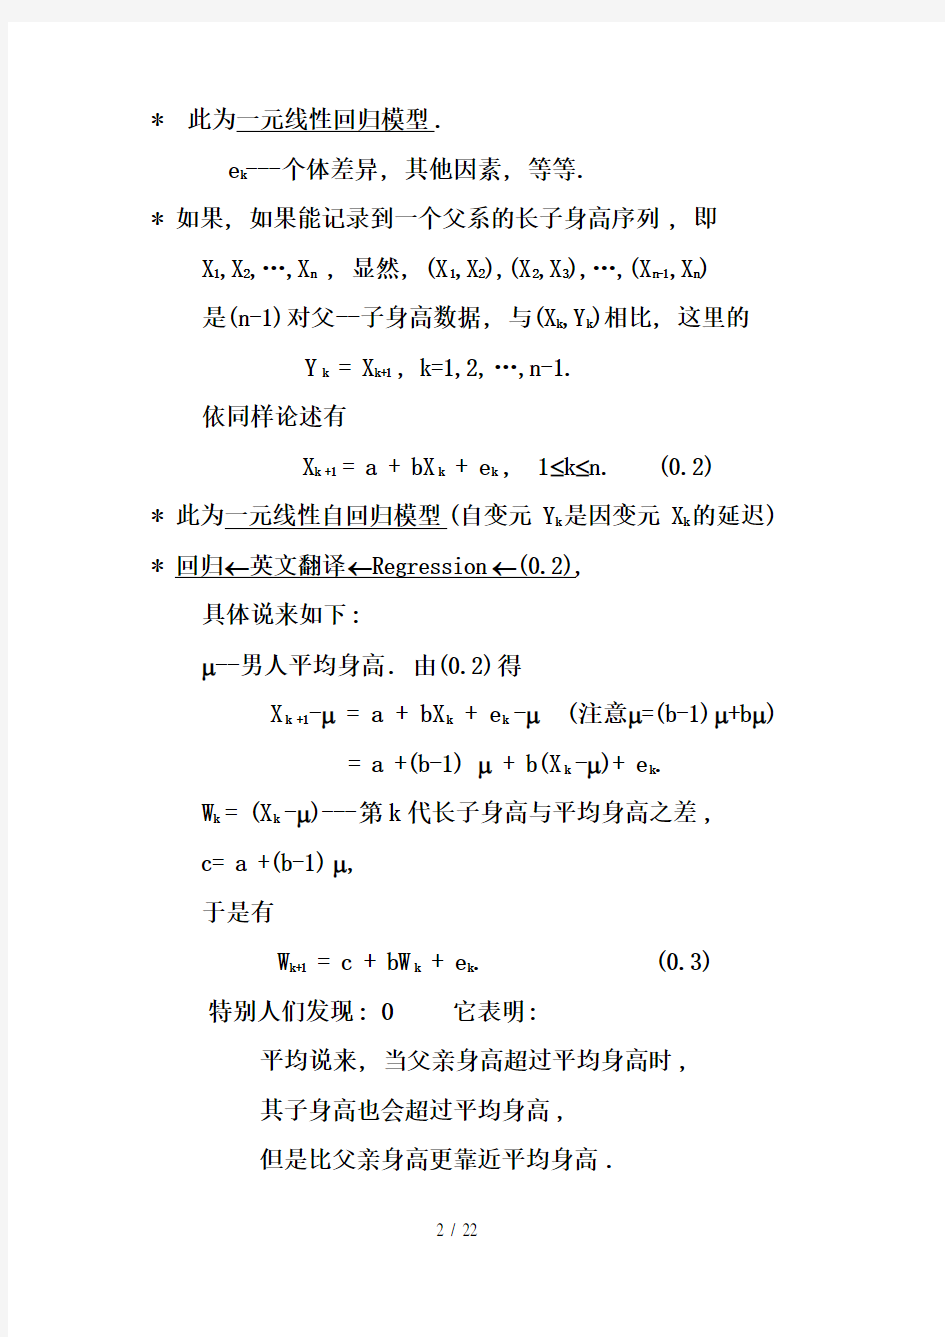 时间序列分析部分讲义中国科学研究院安鸿志